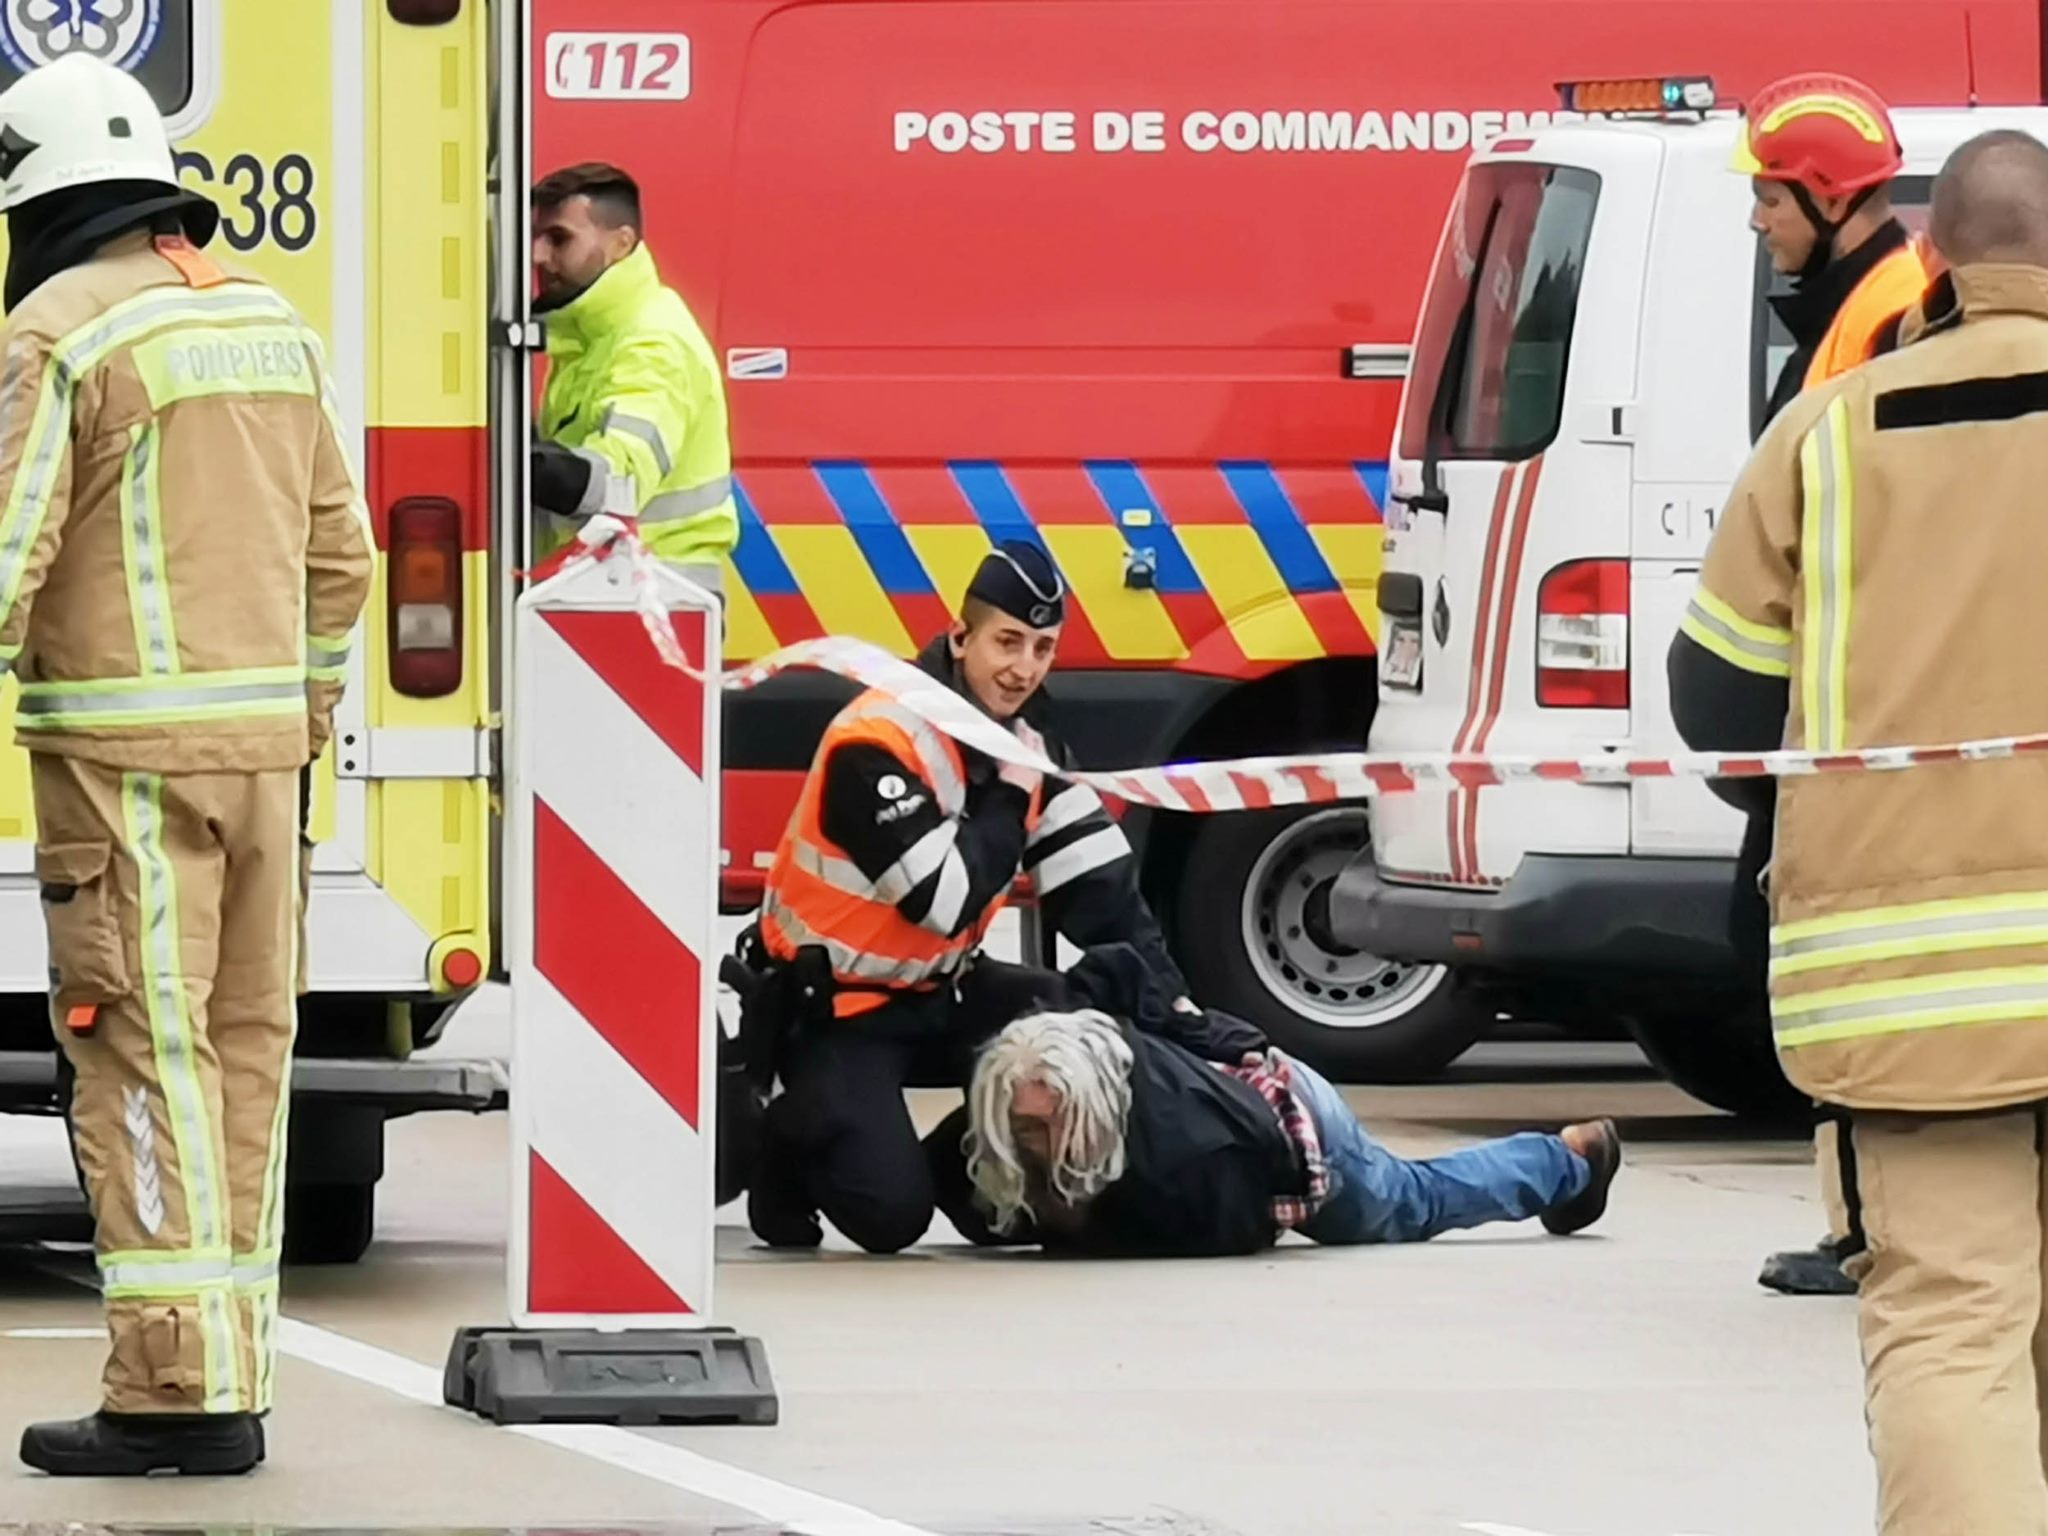 Un exercice catastrophe à l'aéroport de Charleroi (16/10/2019 + photos) 73077410